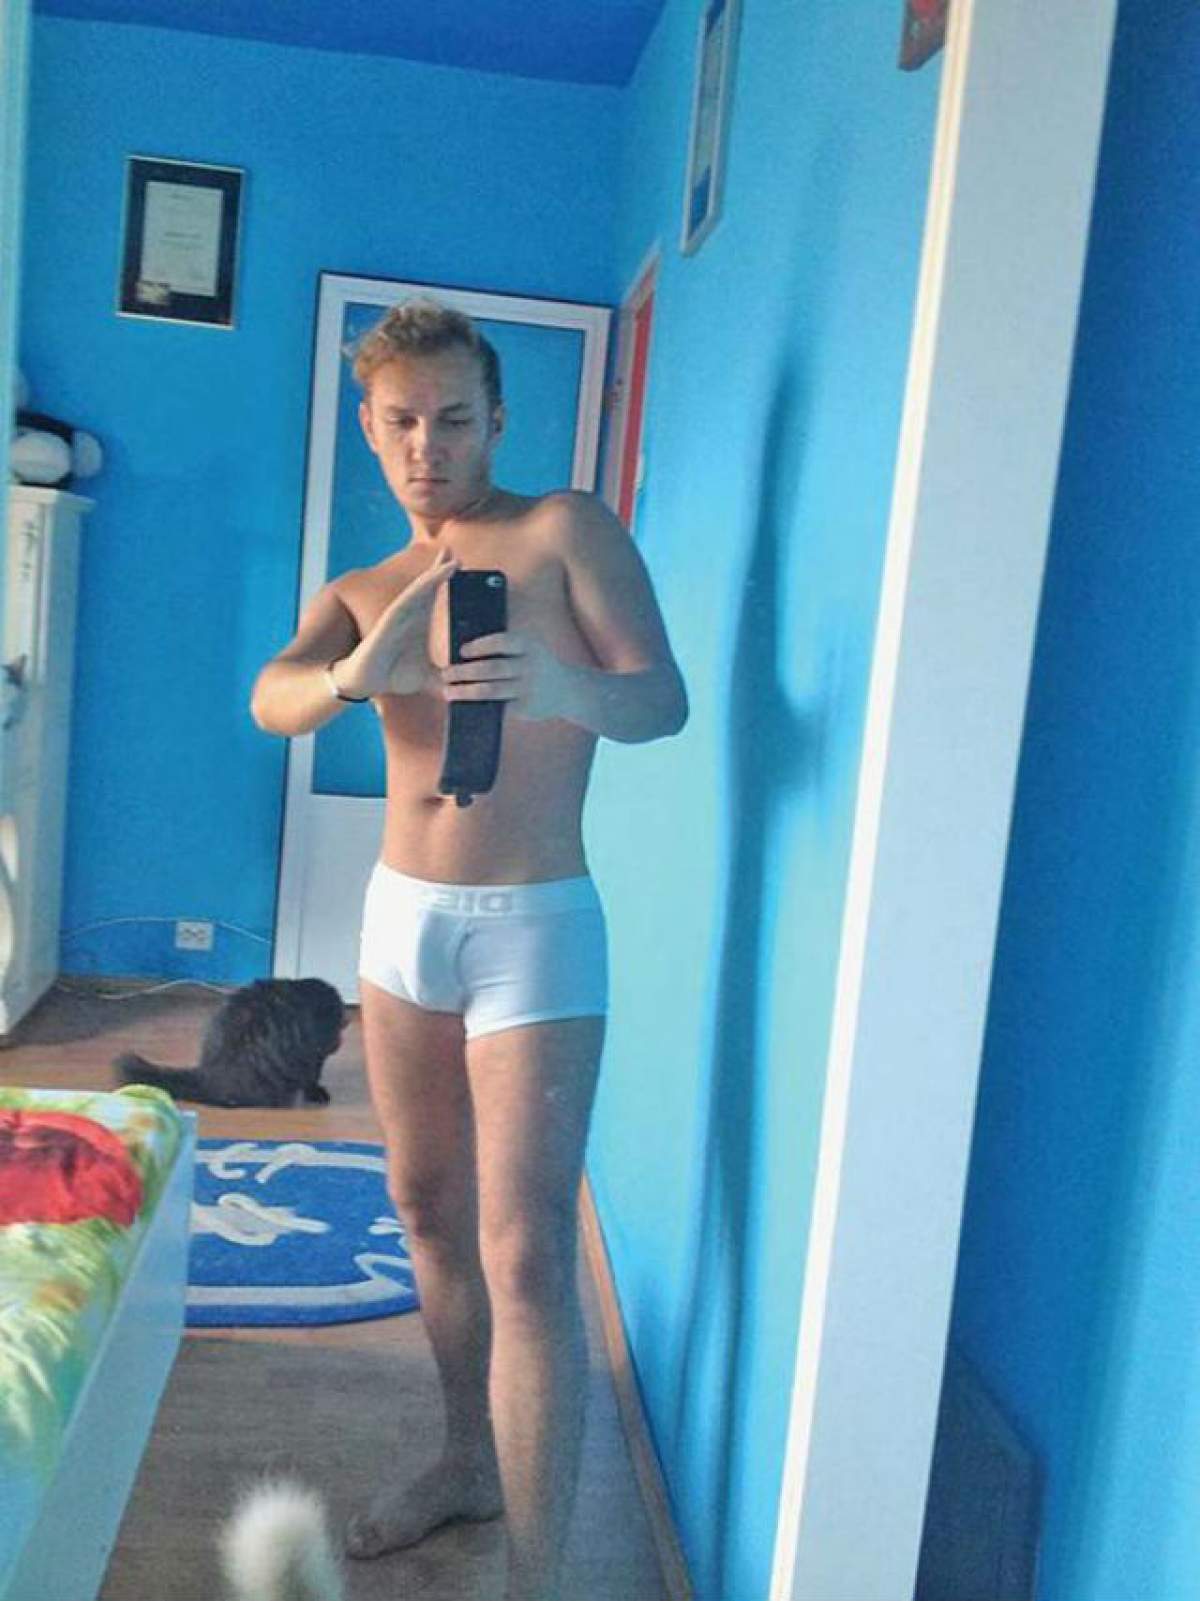 După sesiunile de selfie în chiloţi, Mihai Trăistariu a mai născocit altceva. Cum a putut să se pozeze la plajă